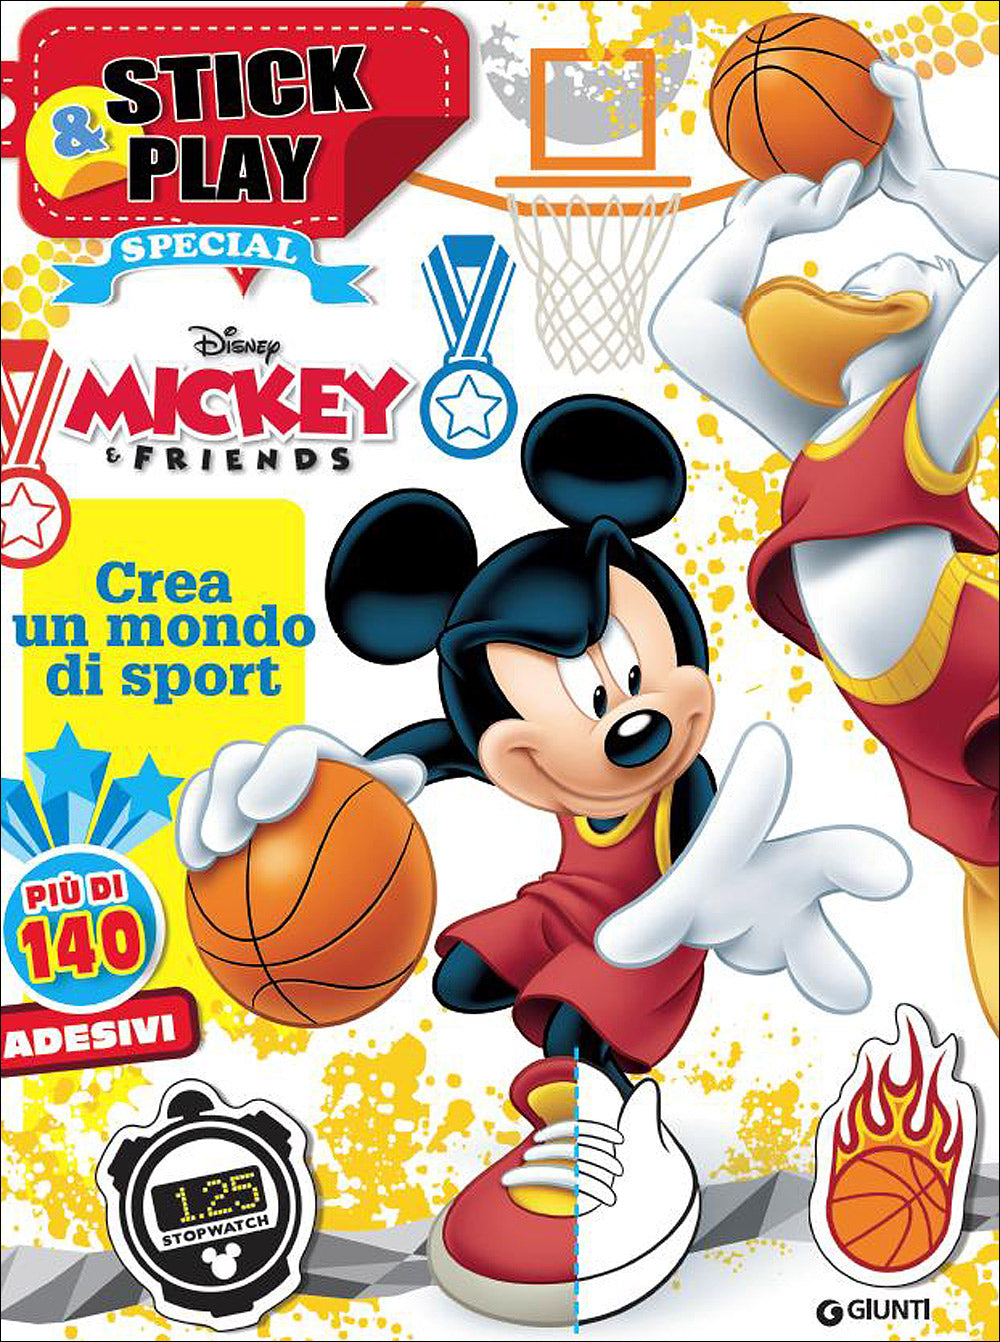 Mickey and Friends Stick&Play::Crea un mondo di sport - Più di 140 adesivi